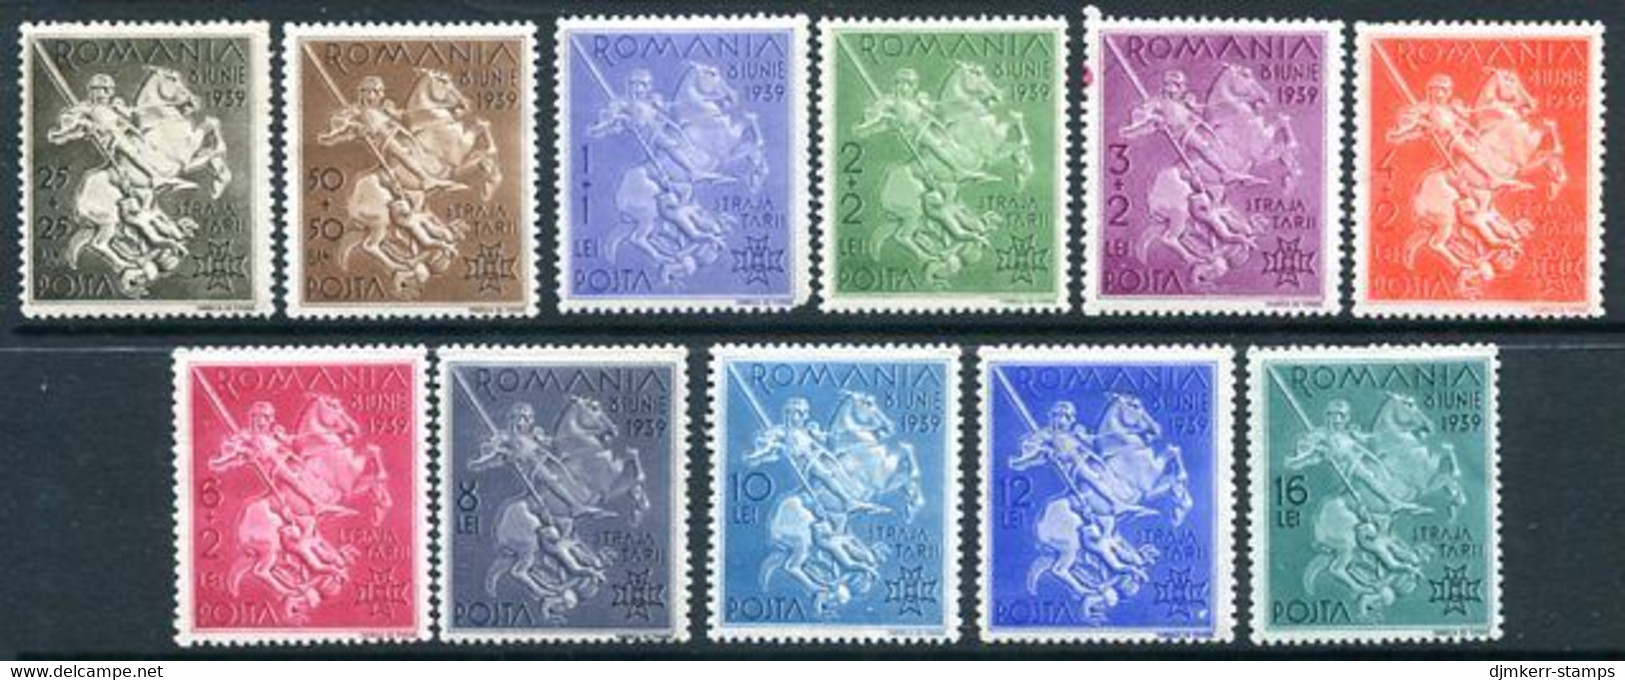 ROMANIA 1939 Accession Anniversary LHM / *  Michel 598-608 - Unused Stamps